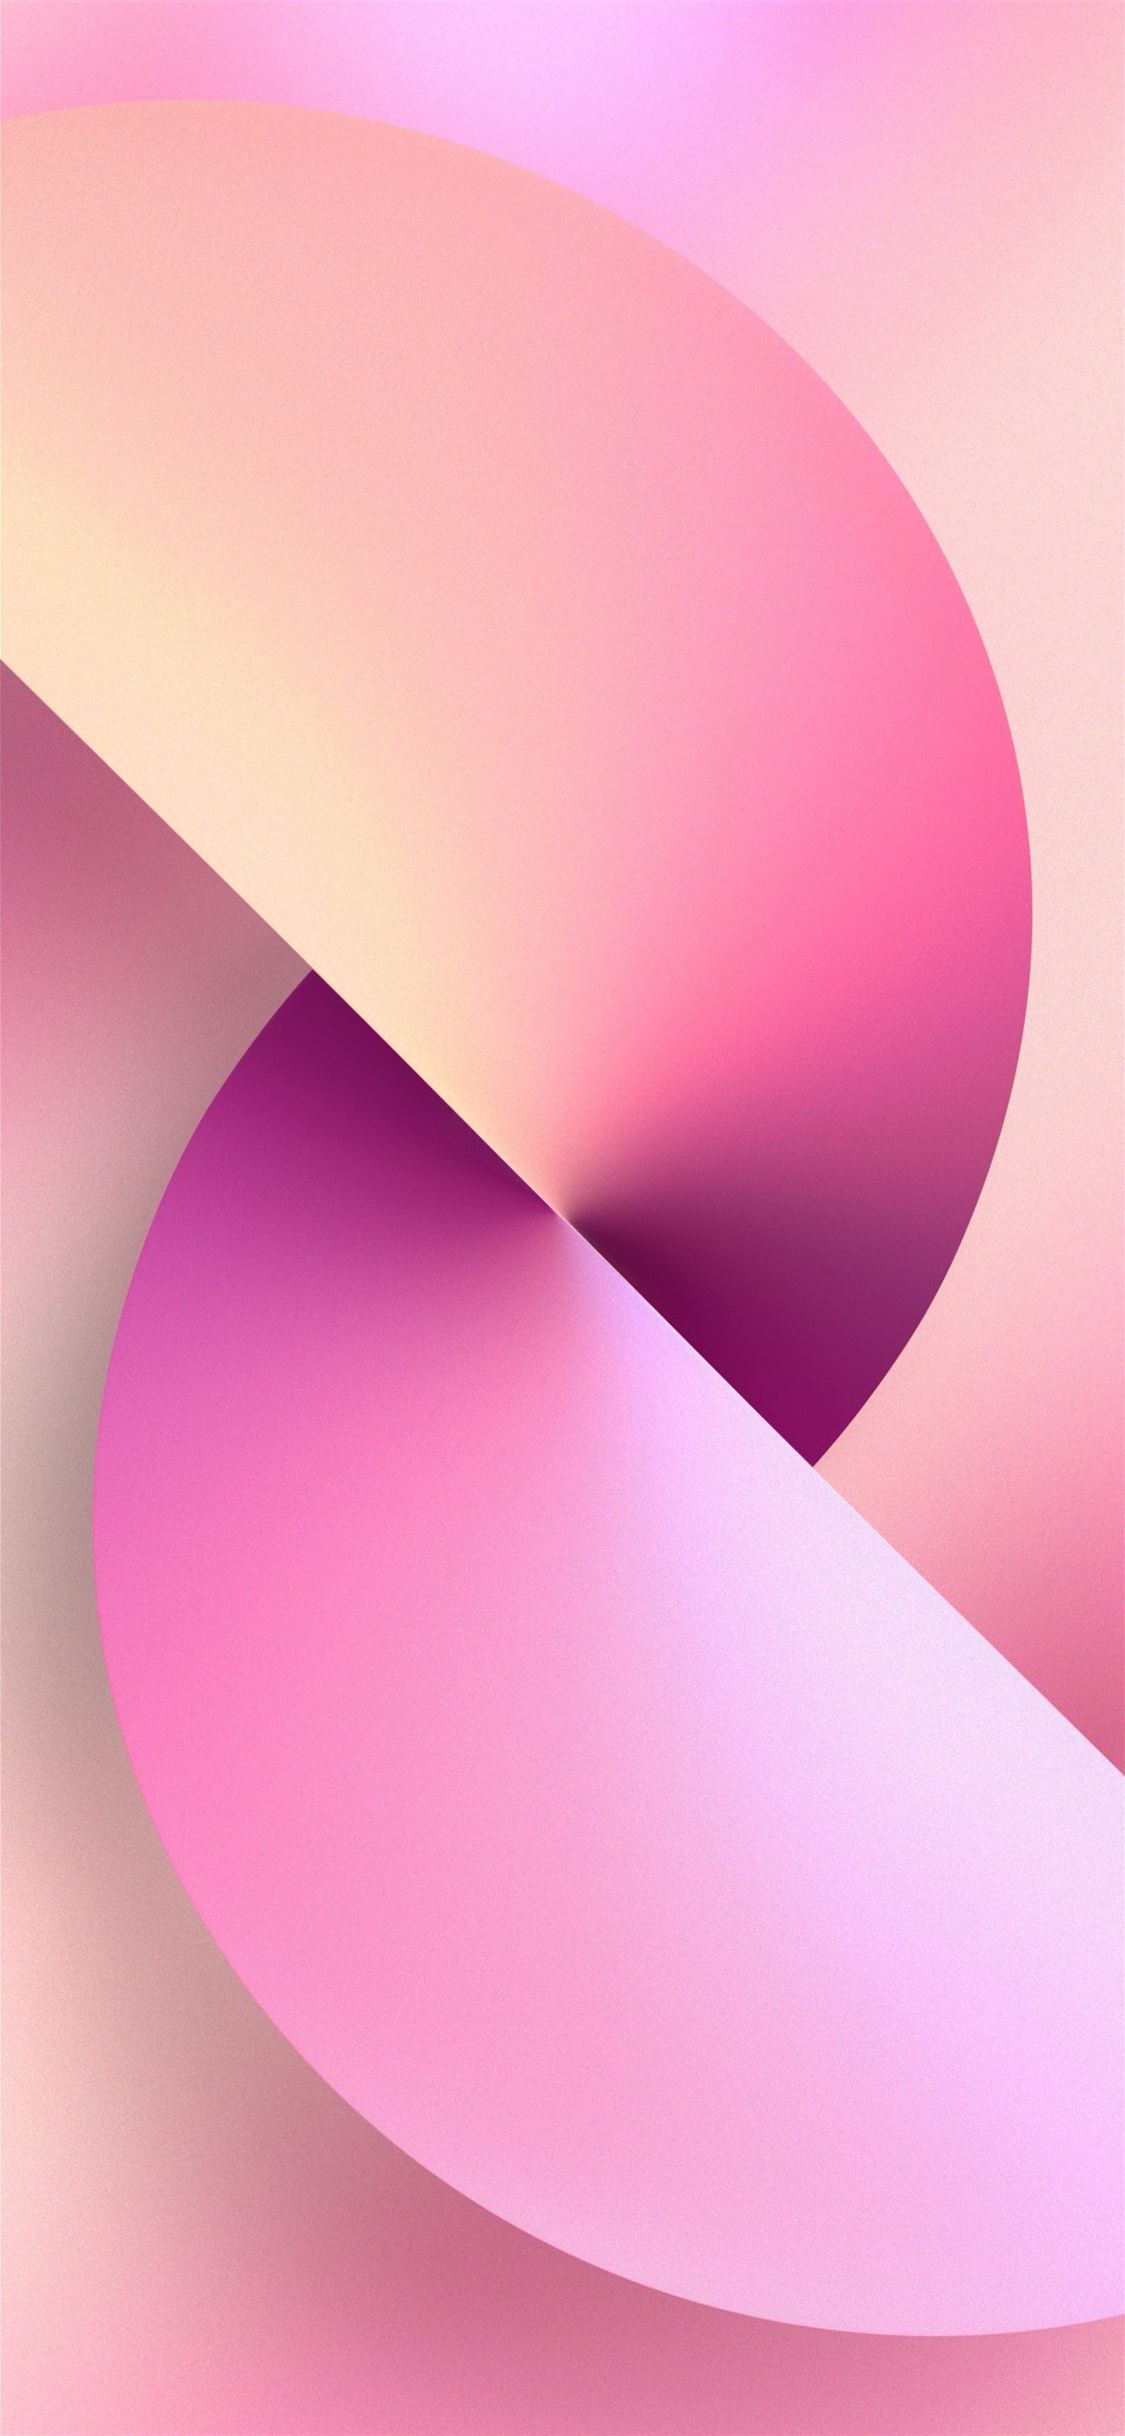 Làm mới màn hình của bạn bằng những tác phẩm nghệ thuật màu hồng cho iPhone 13, nơi mà sự pha trộn giữa màu sắc tươi sáng và thiết kế nghệ thuật đầy tinh tế mang đến cho bạn một trải nghiệm tuyệt vời. Tận hưởng cái nhìn tươi mới và những thiết kế thời trang trên màn hình của bạn.